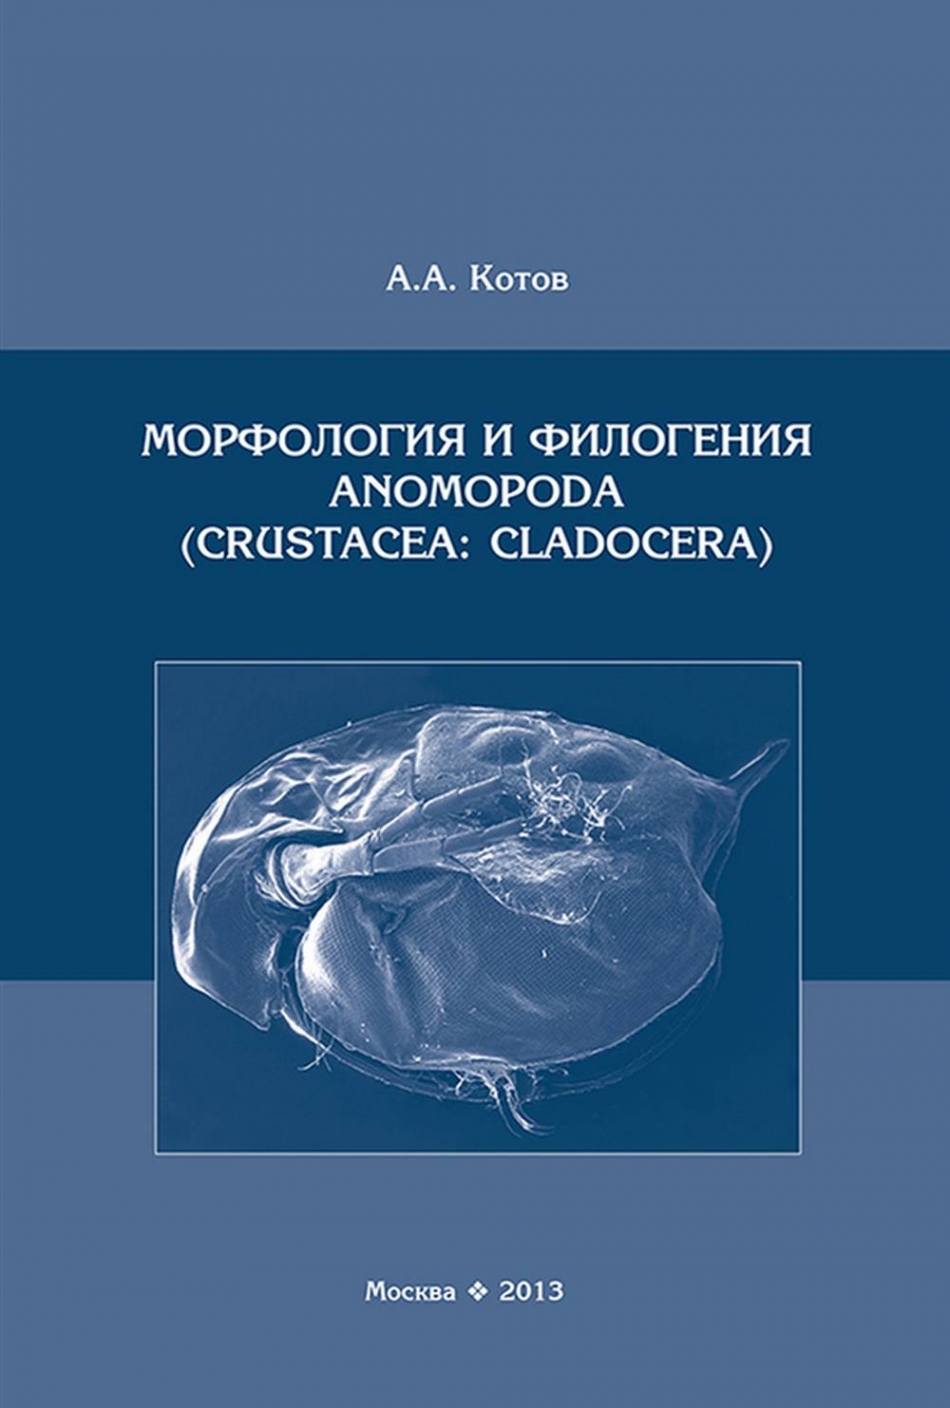  ..    Anomopoda (Crustacea: Cladocera) 